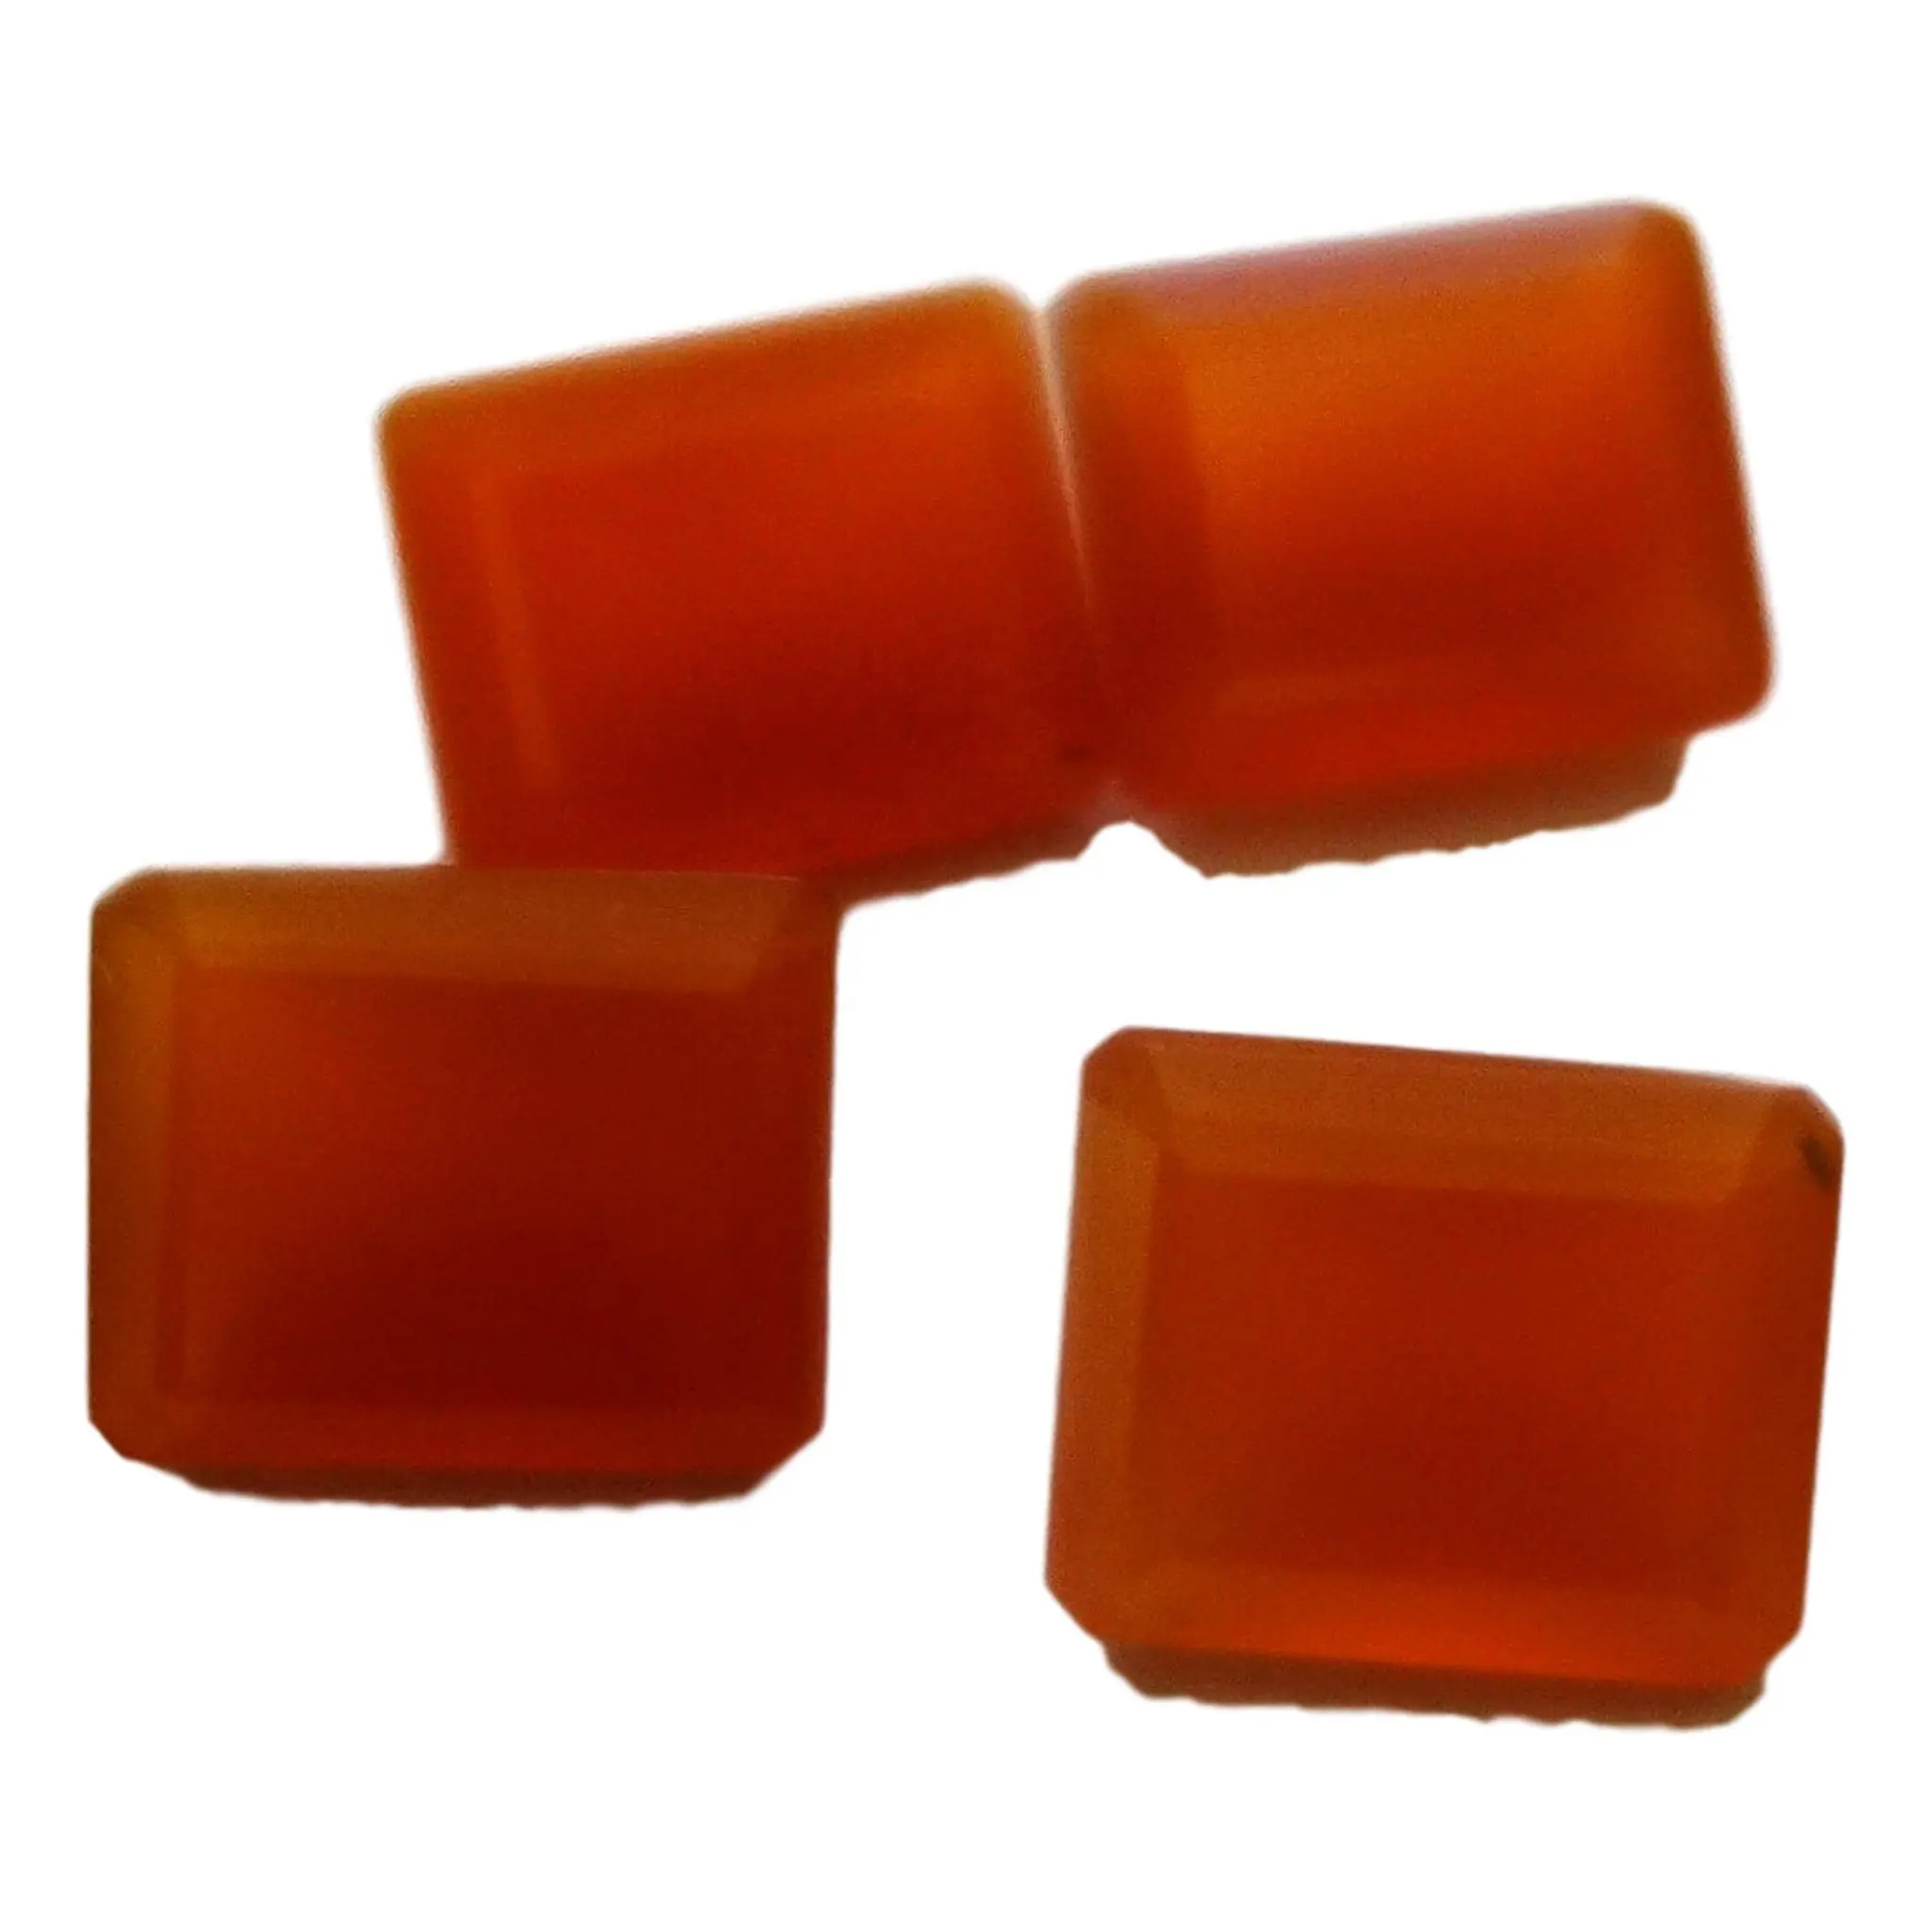 Segi oranye kalsedon zamrud memotong semua bentuk dan ukuran dipotong pada pesanan khusus dalam harga grosir di semua jenis alami lainnya